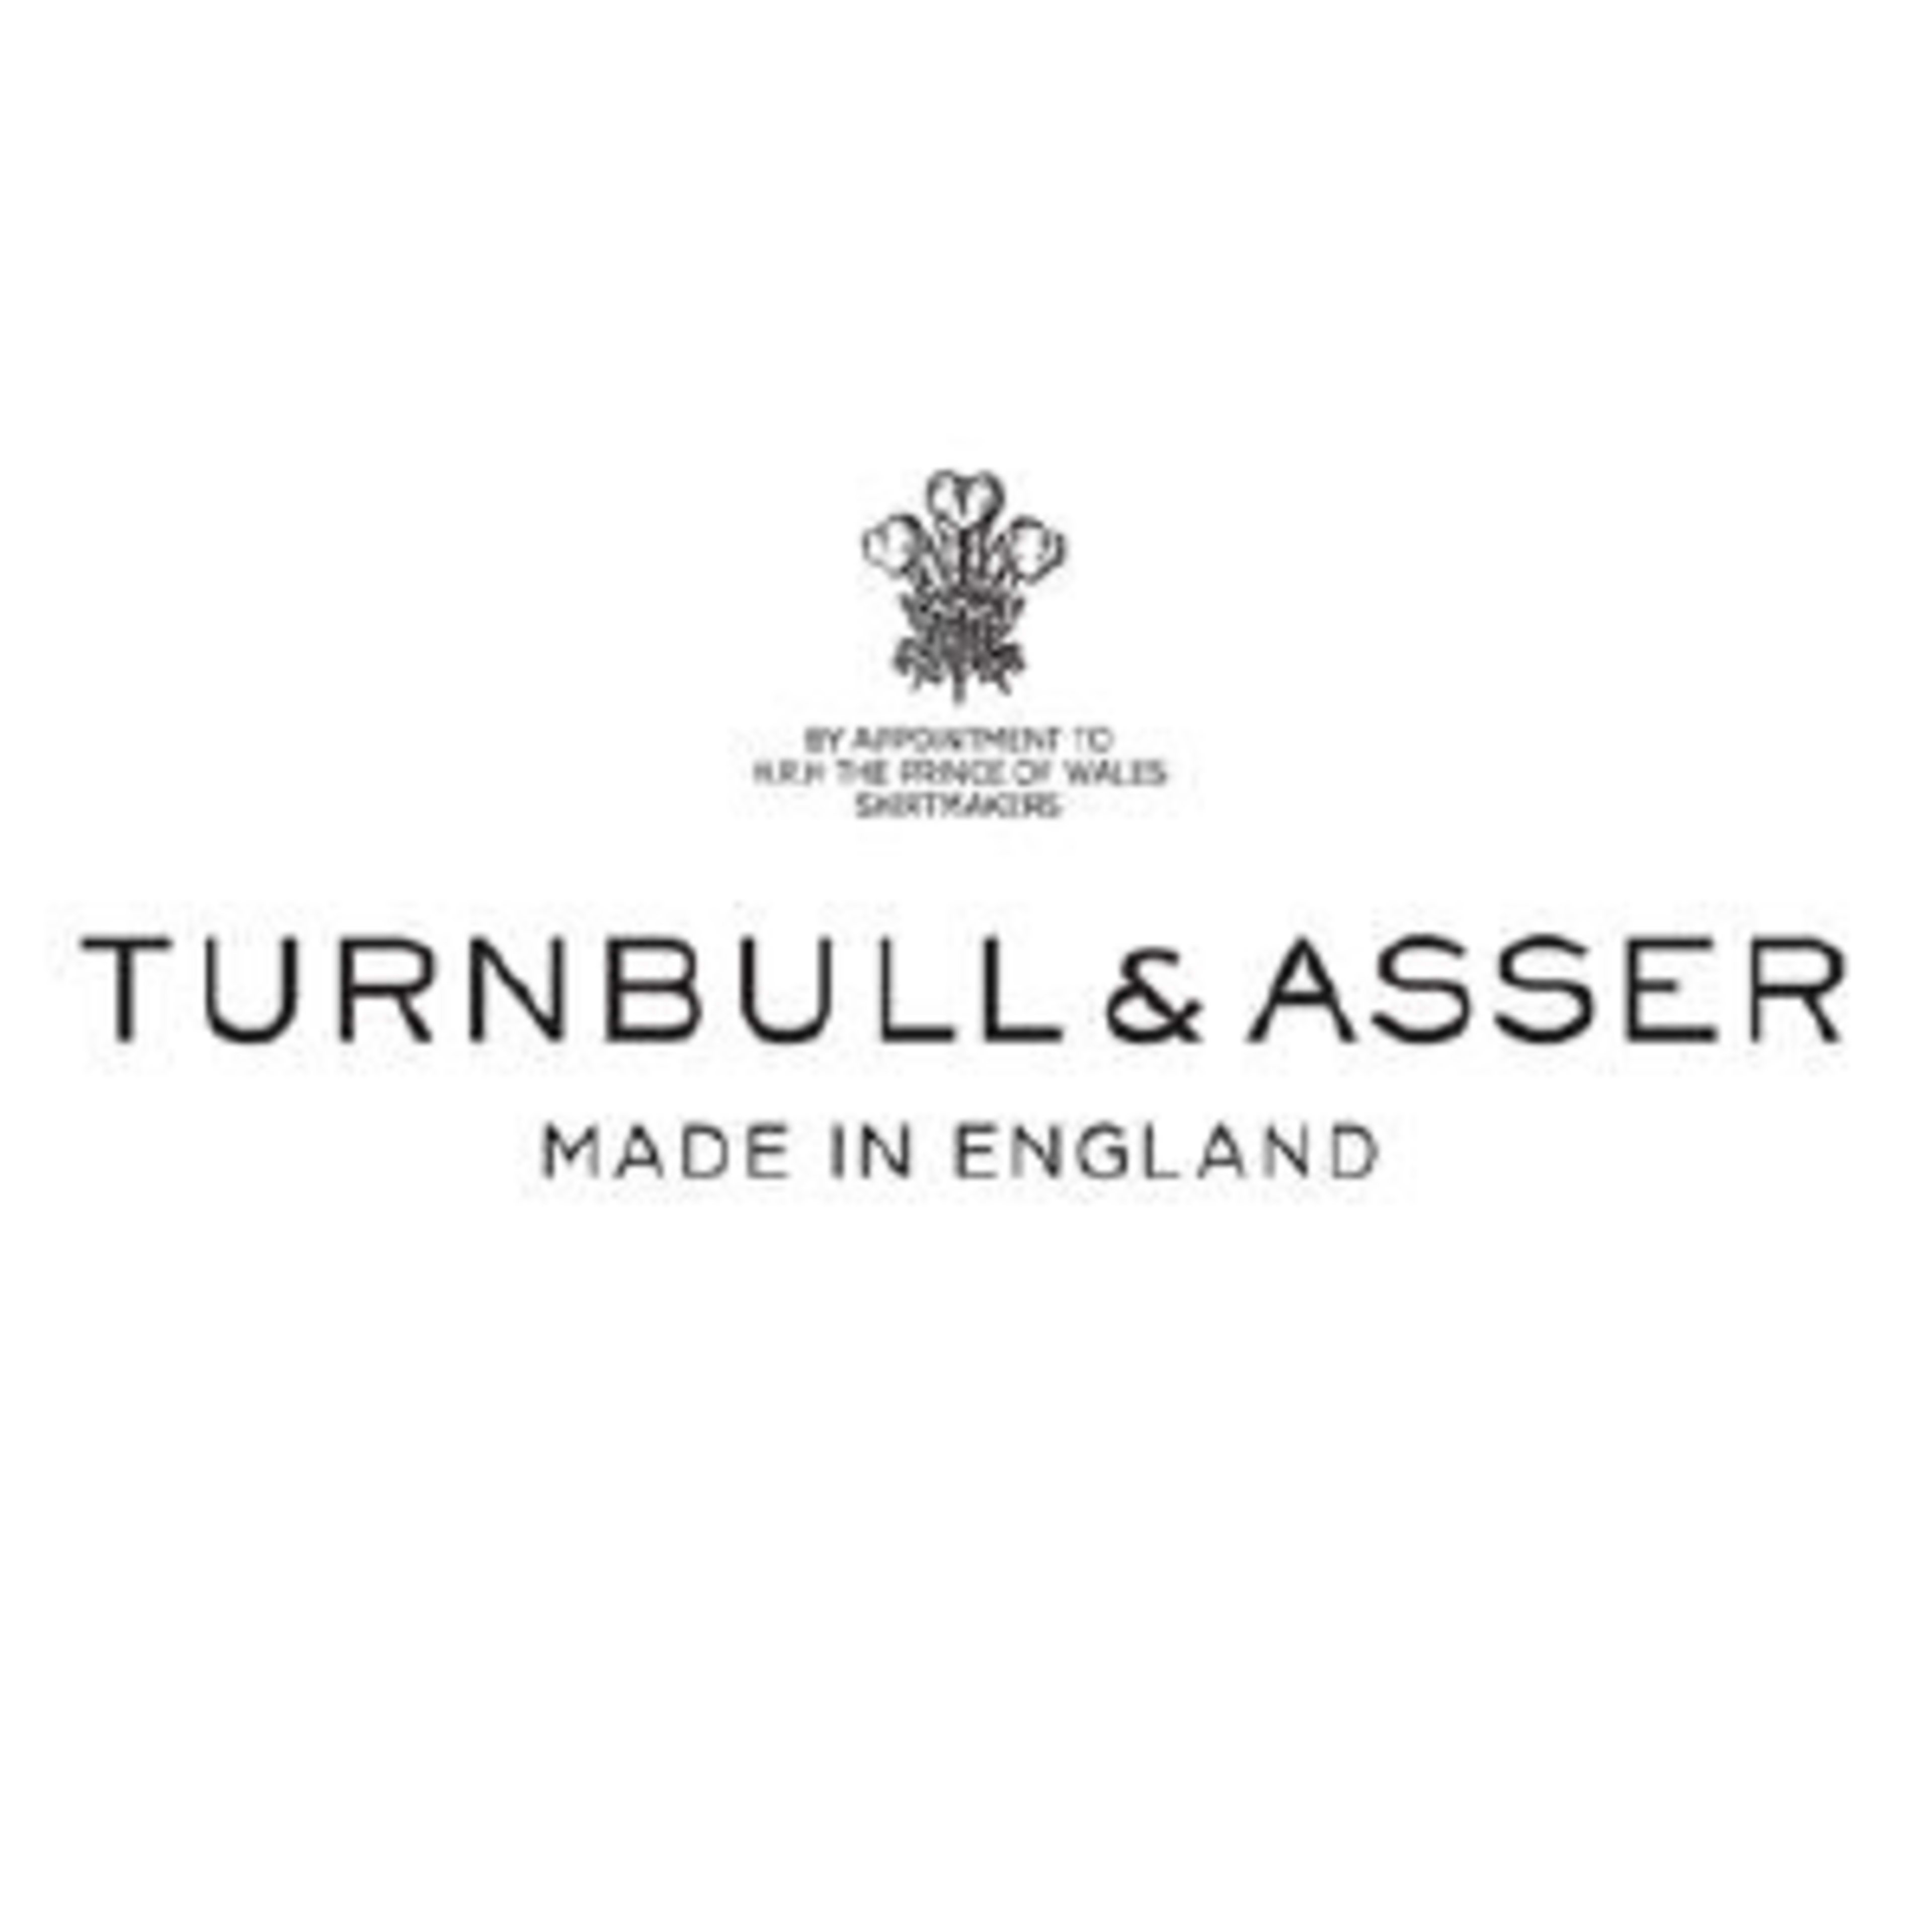 Turnbull & AsserCode